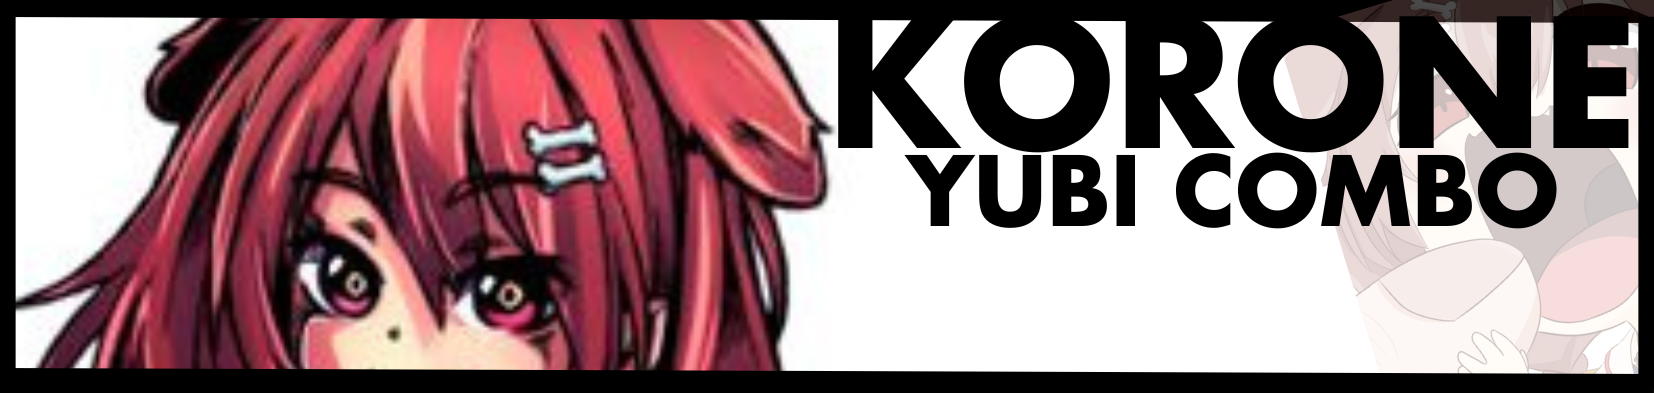 Idol Showdown - Guide for Korone Best Combos - — YUBI COMBO — - 4307E39